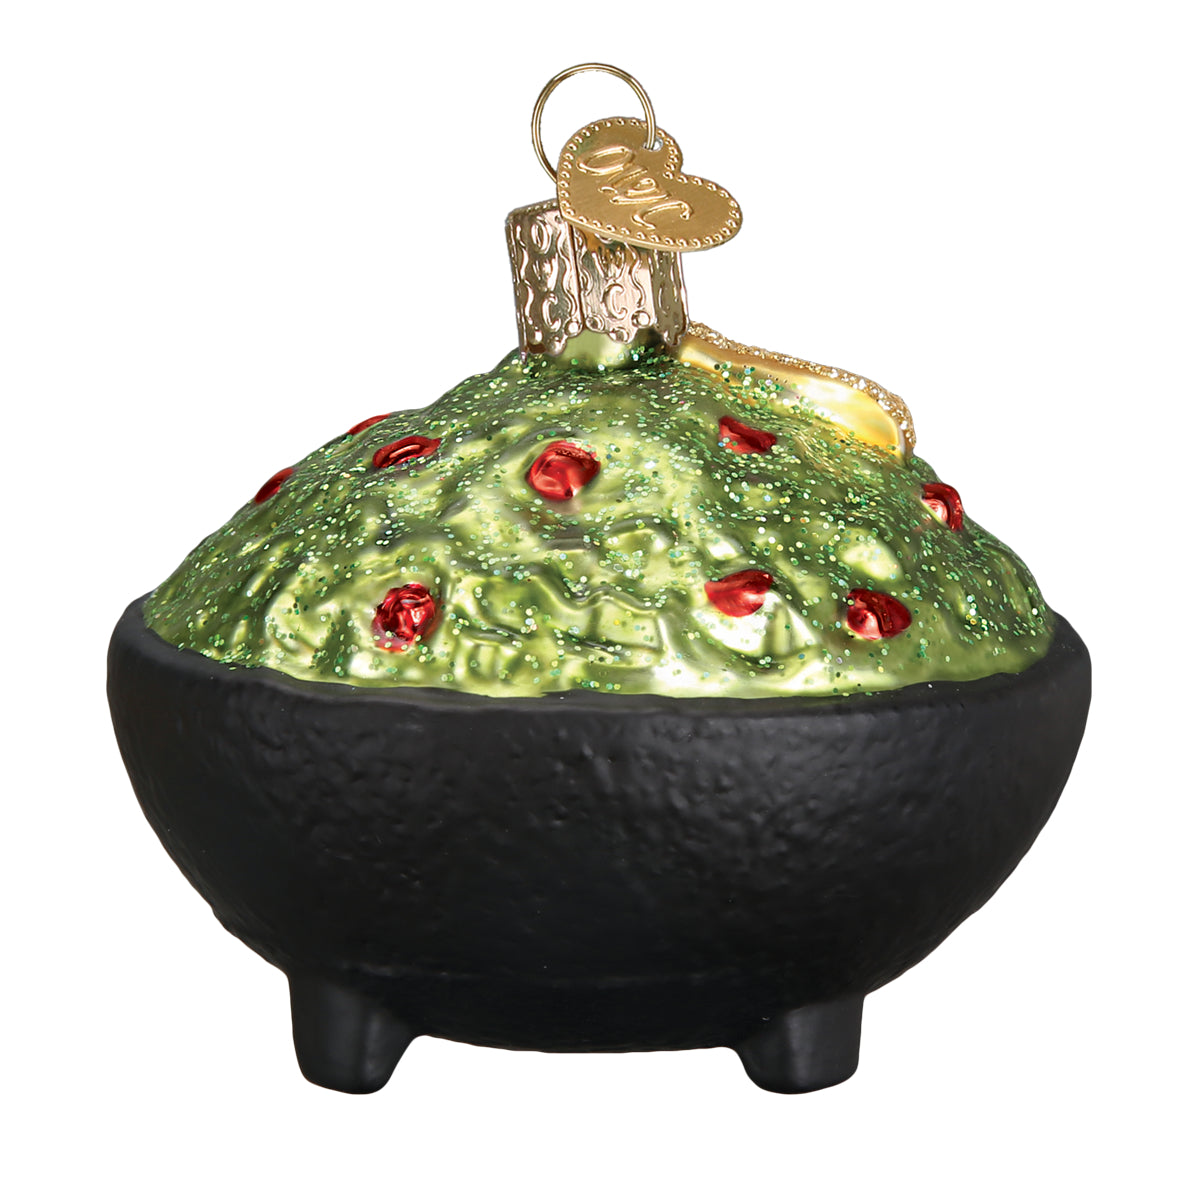 Guacamole Ornament